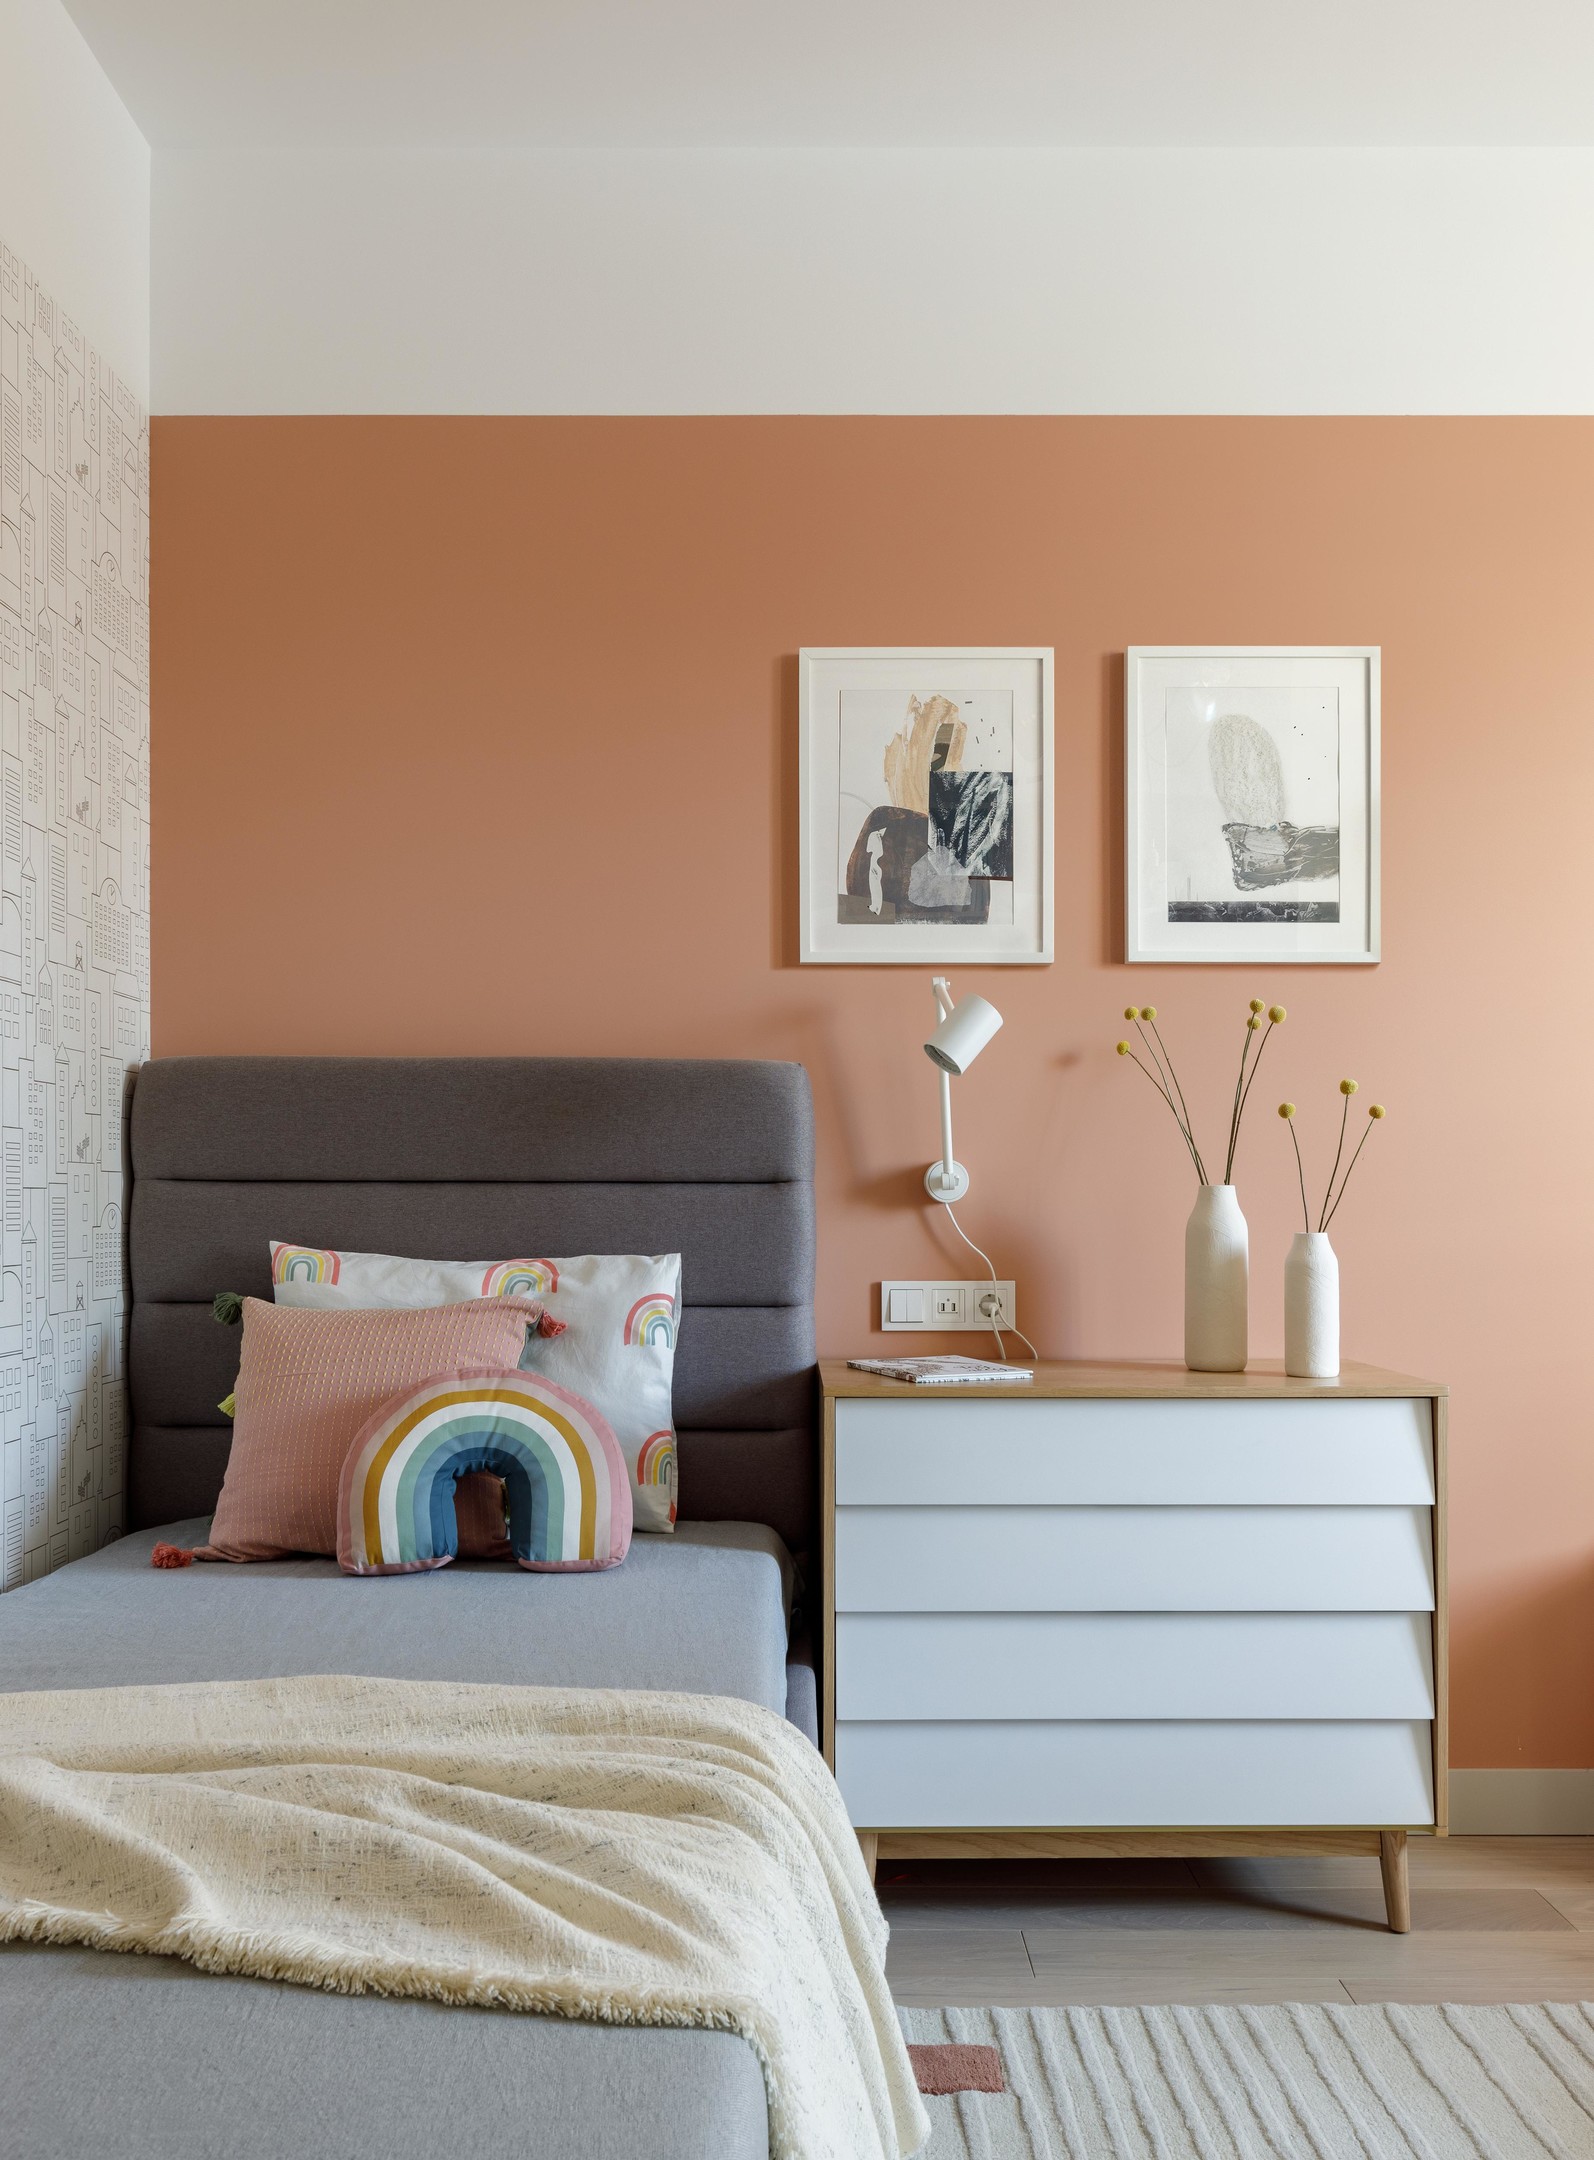 Phòng của trẻ em cũng được đầu tư thiết kế không thua kém phòng người lớn, từ nội thất cho đến phụ kiện trang trí xinh xắn. Cả màu sơn tường sắc hồng cam cũng vô cùng trẻ trung và nổi bật.